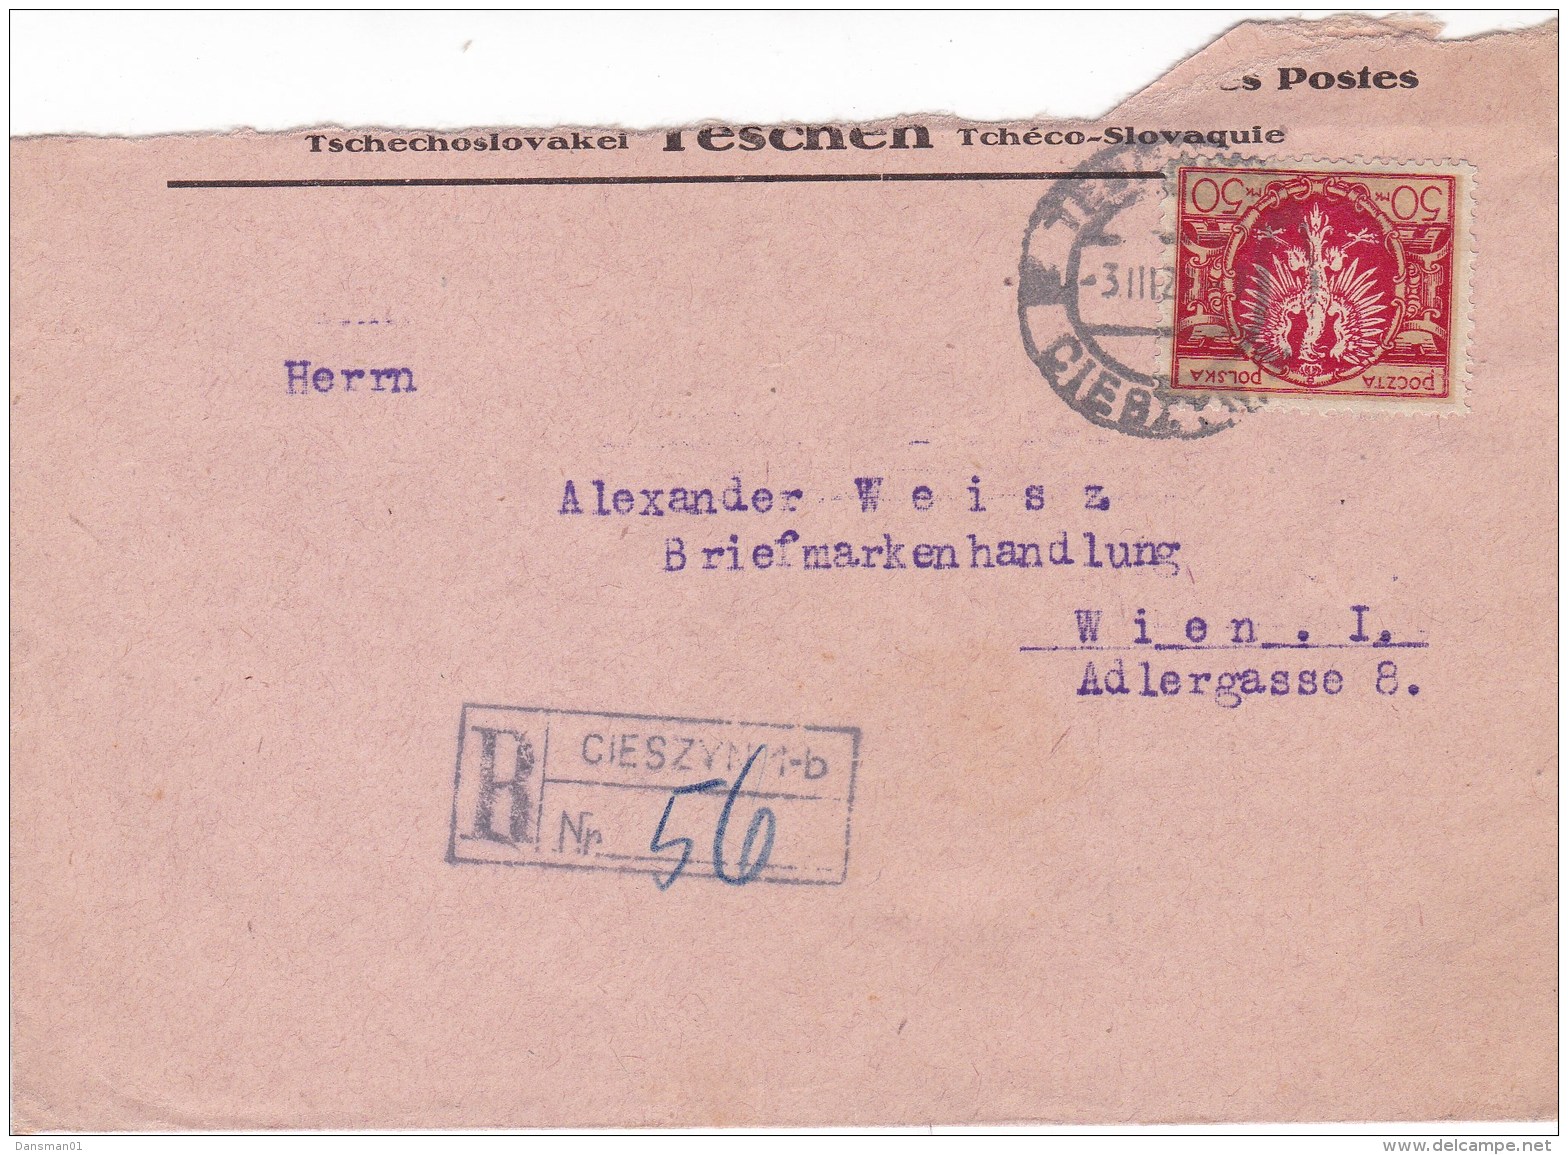 POLAND 1922 Registered Cover - Briefe U. Dokumente